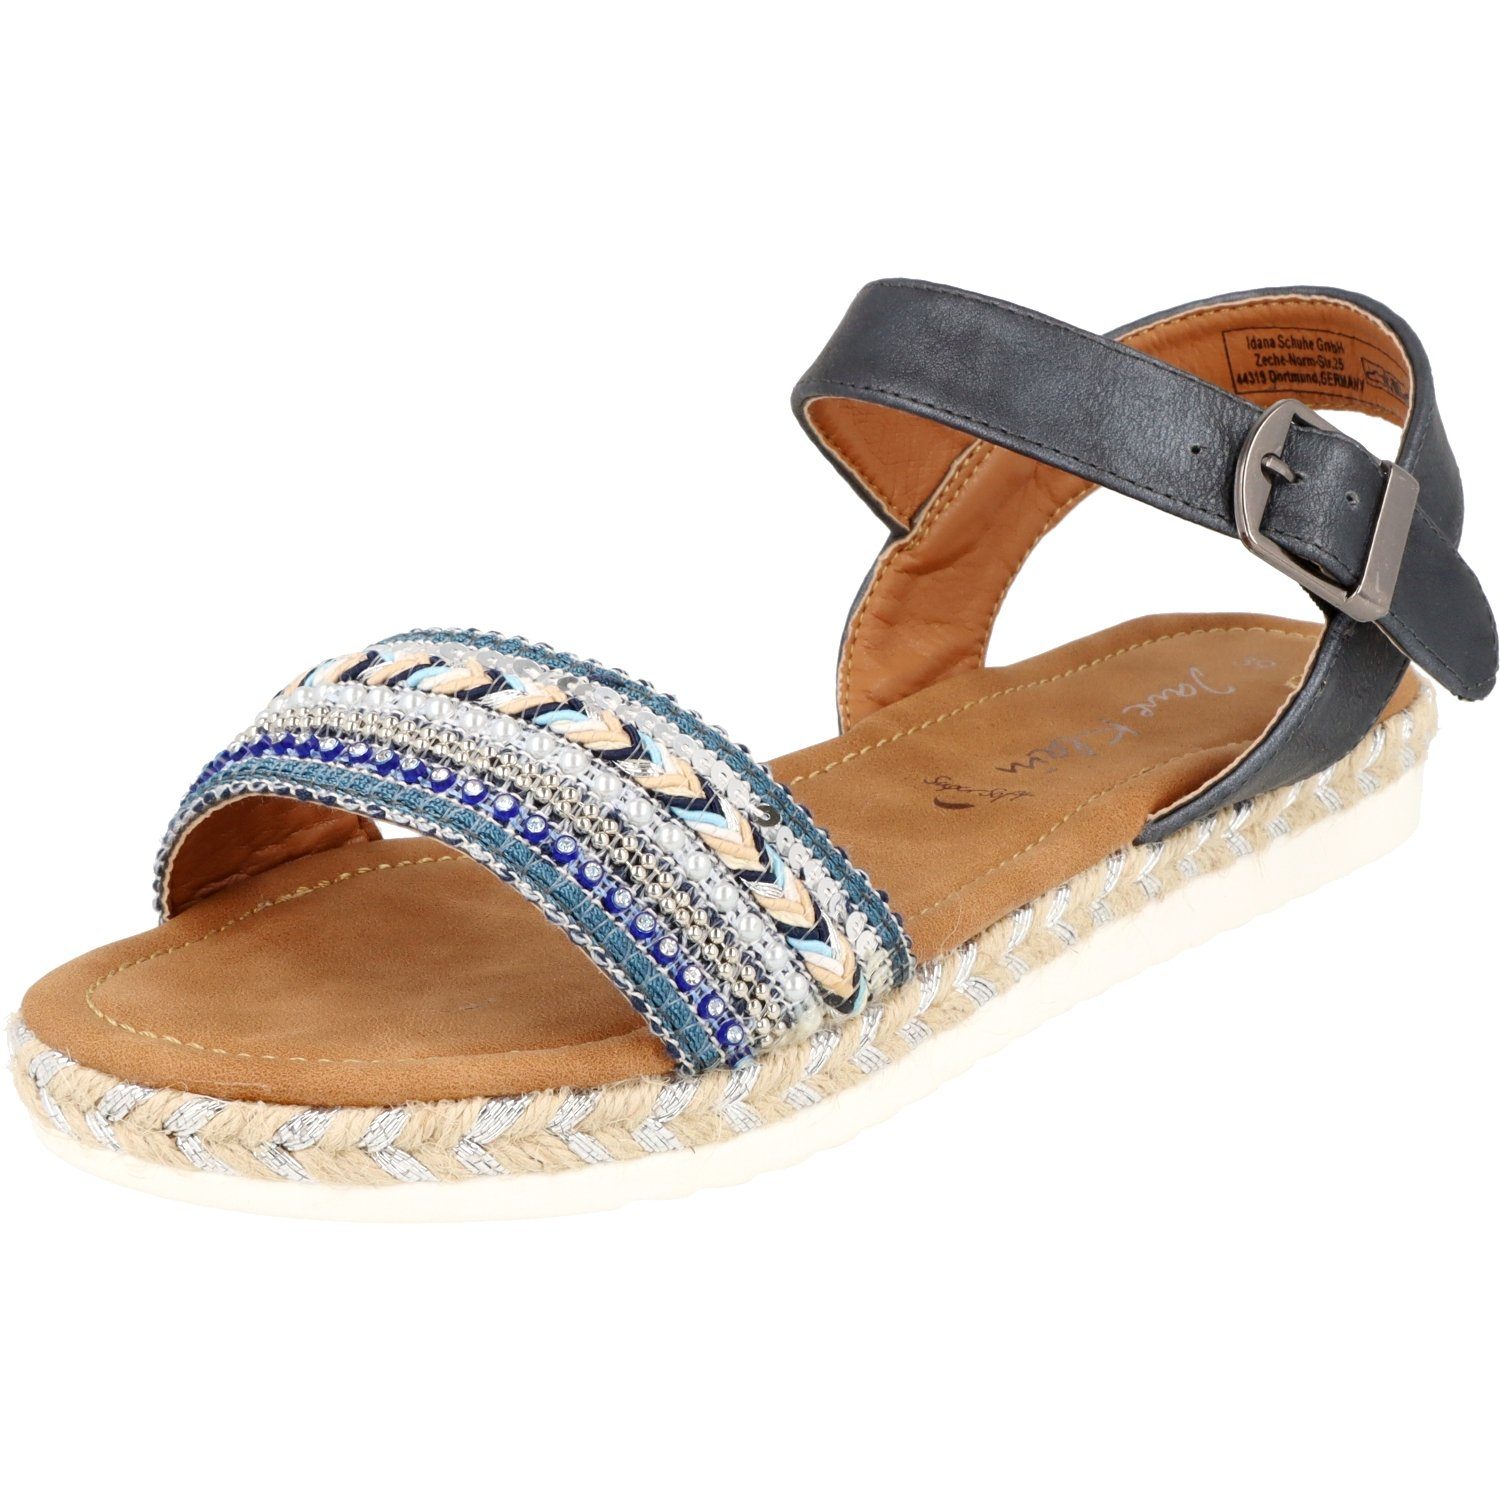 Jane Klain 281-411 Damen Sommer Schuhe Sandale mit Glitzersteine Römersandale Blue